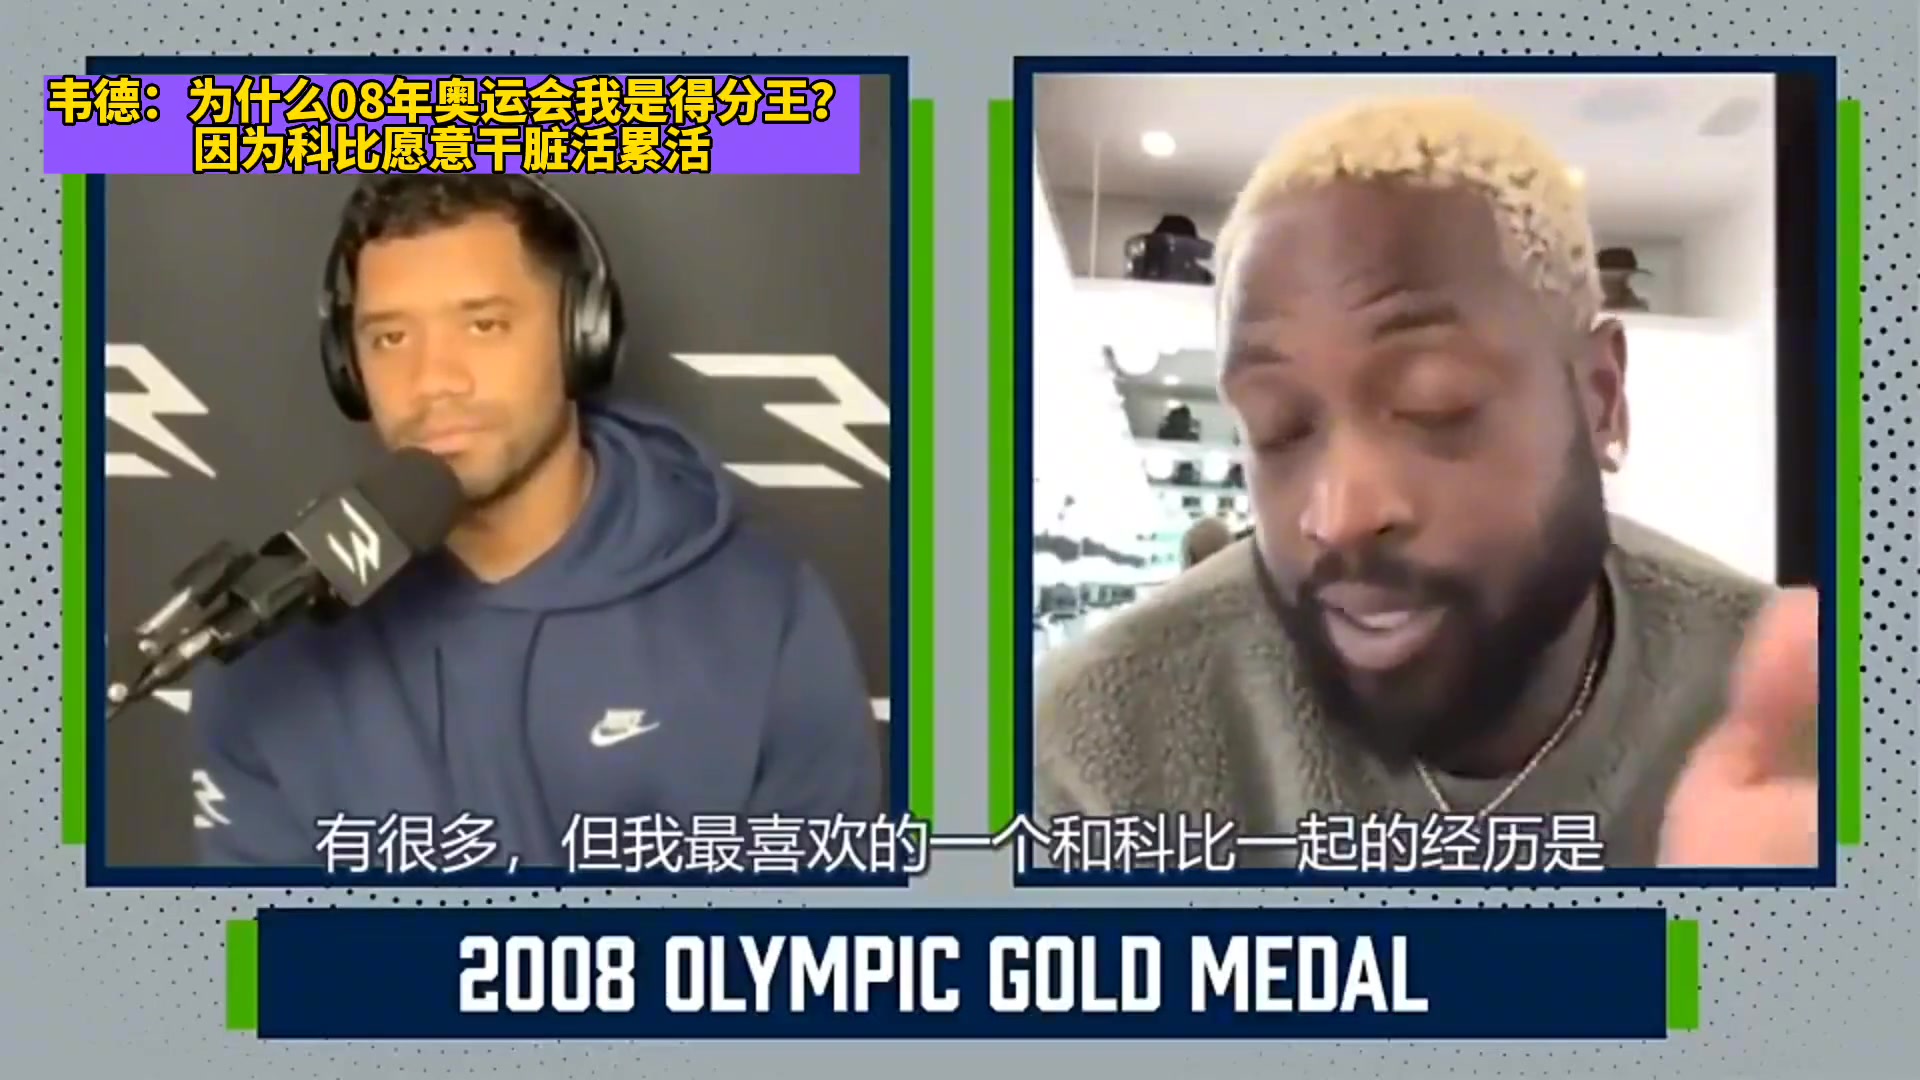 韦德：08年奥运会为啥我是得分王 因为科比愿意干脏活累活